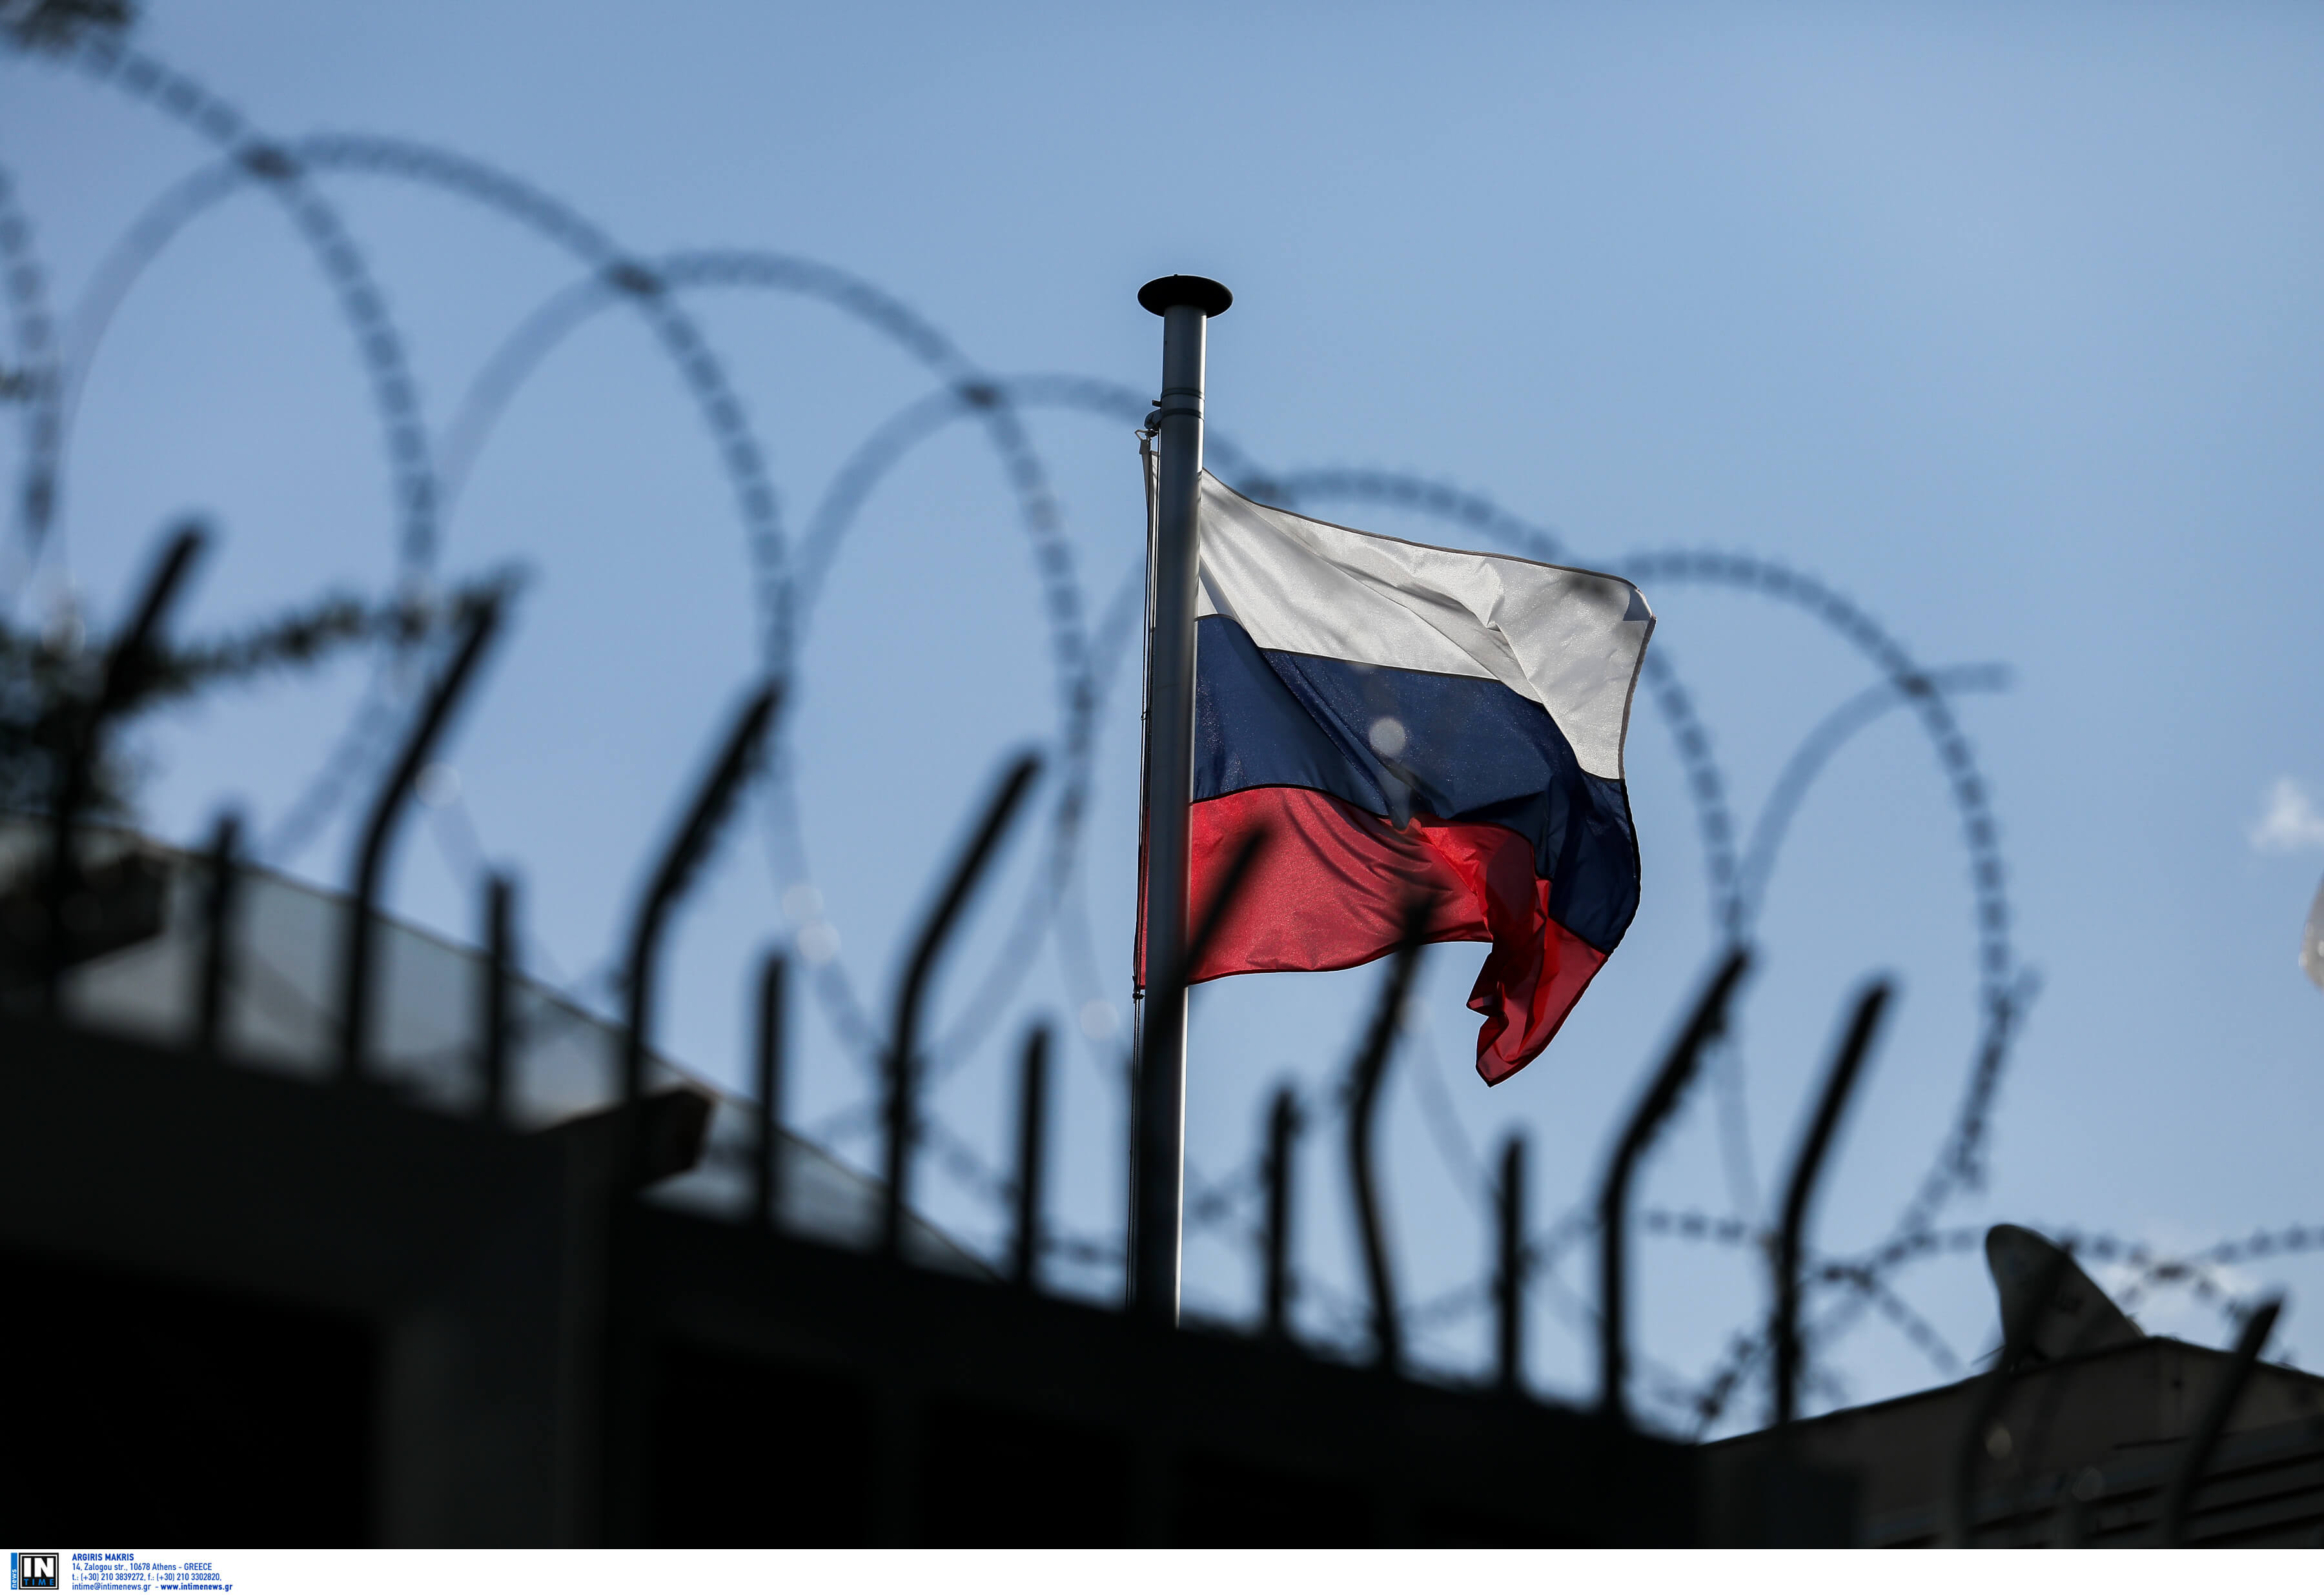 Έκρηξη στο ρωσικό προξενείο: Ευγνωμοσύνη της ρωσικής πρεσβείας στις ελληνικές αρχές